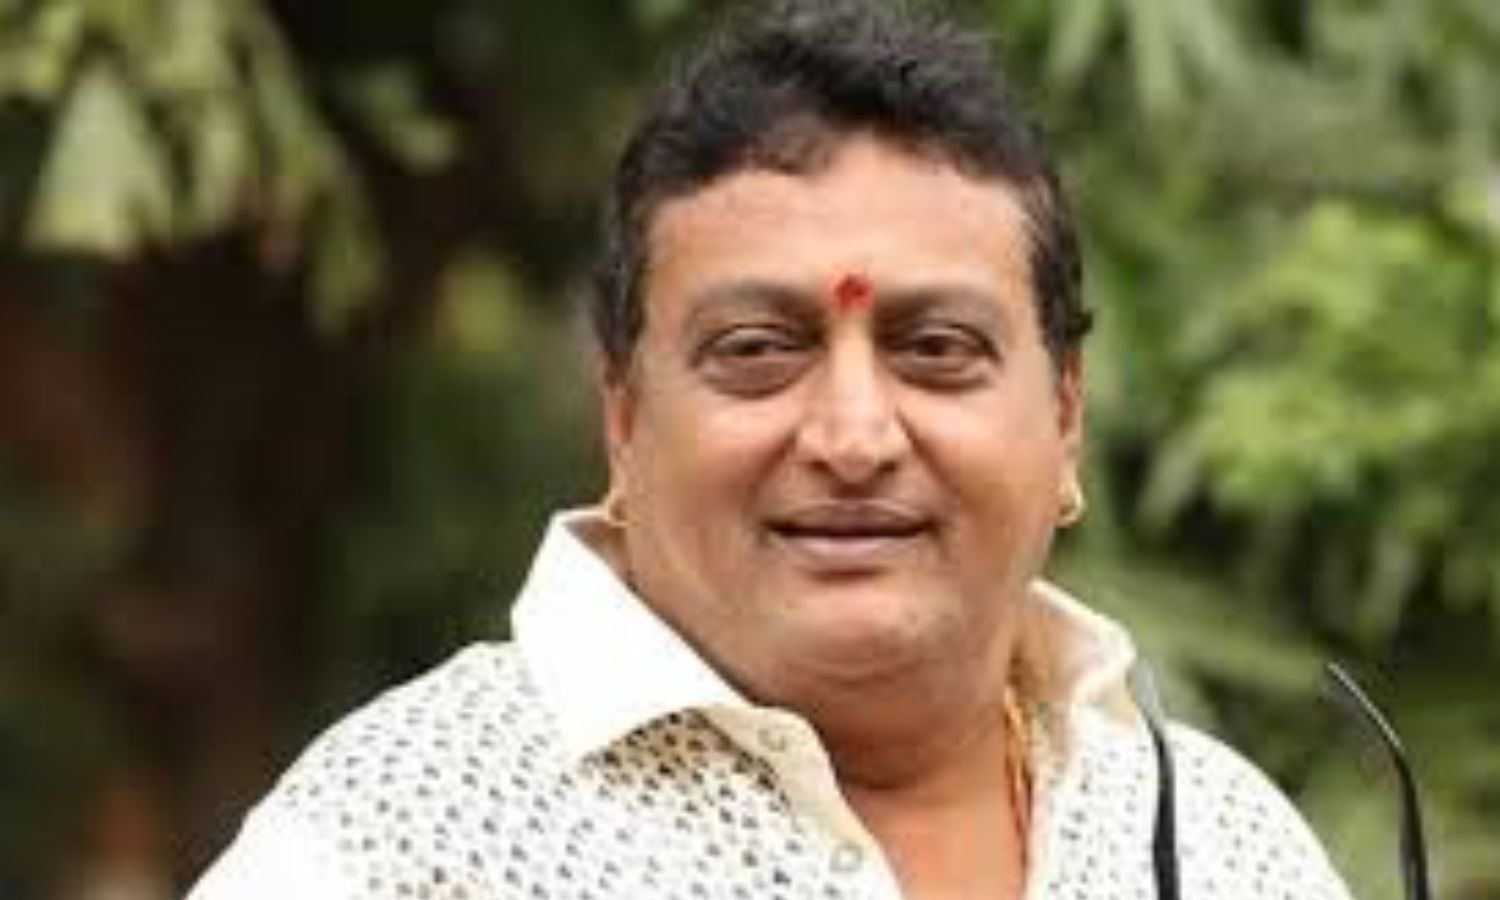 Prudhvi Raj non bailable arrest warrant rumors